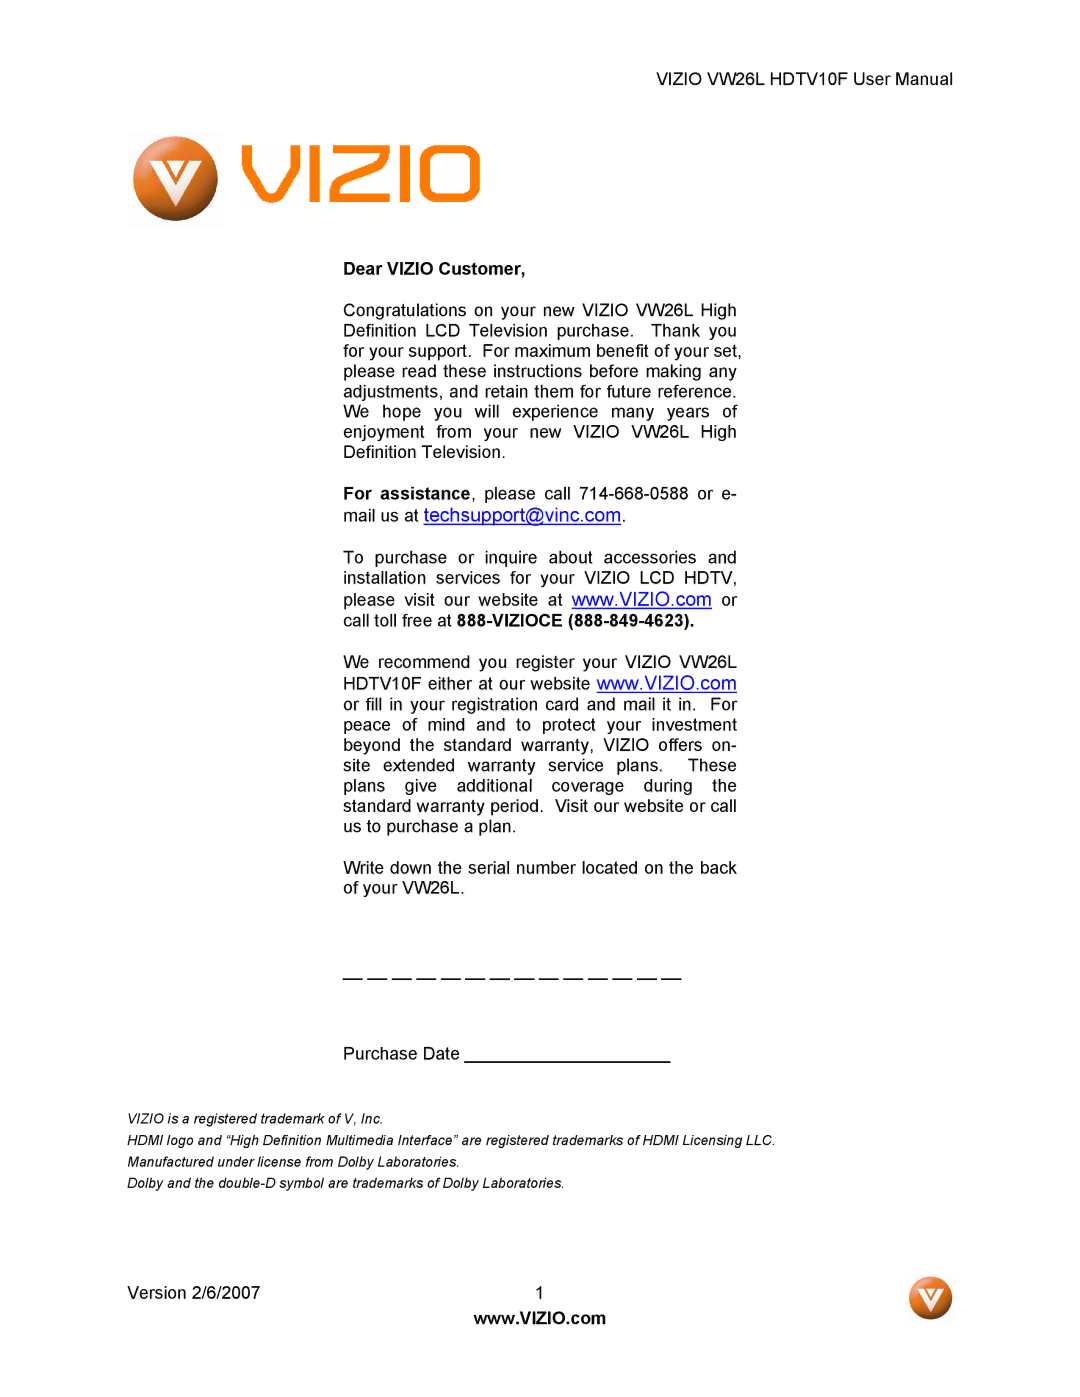 Vizio VW26L user manual Dear Vizio Customer 